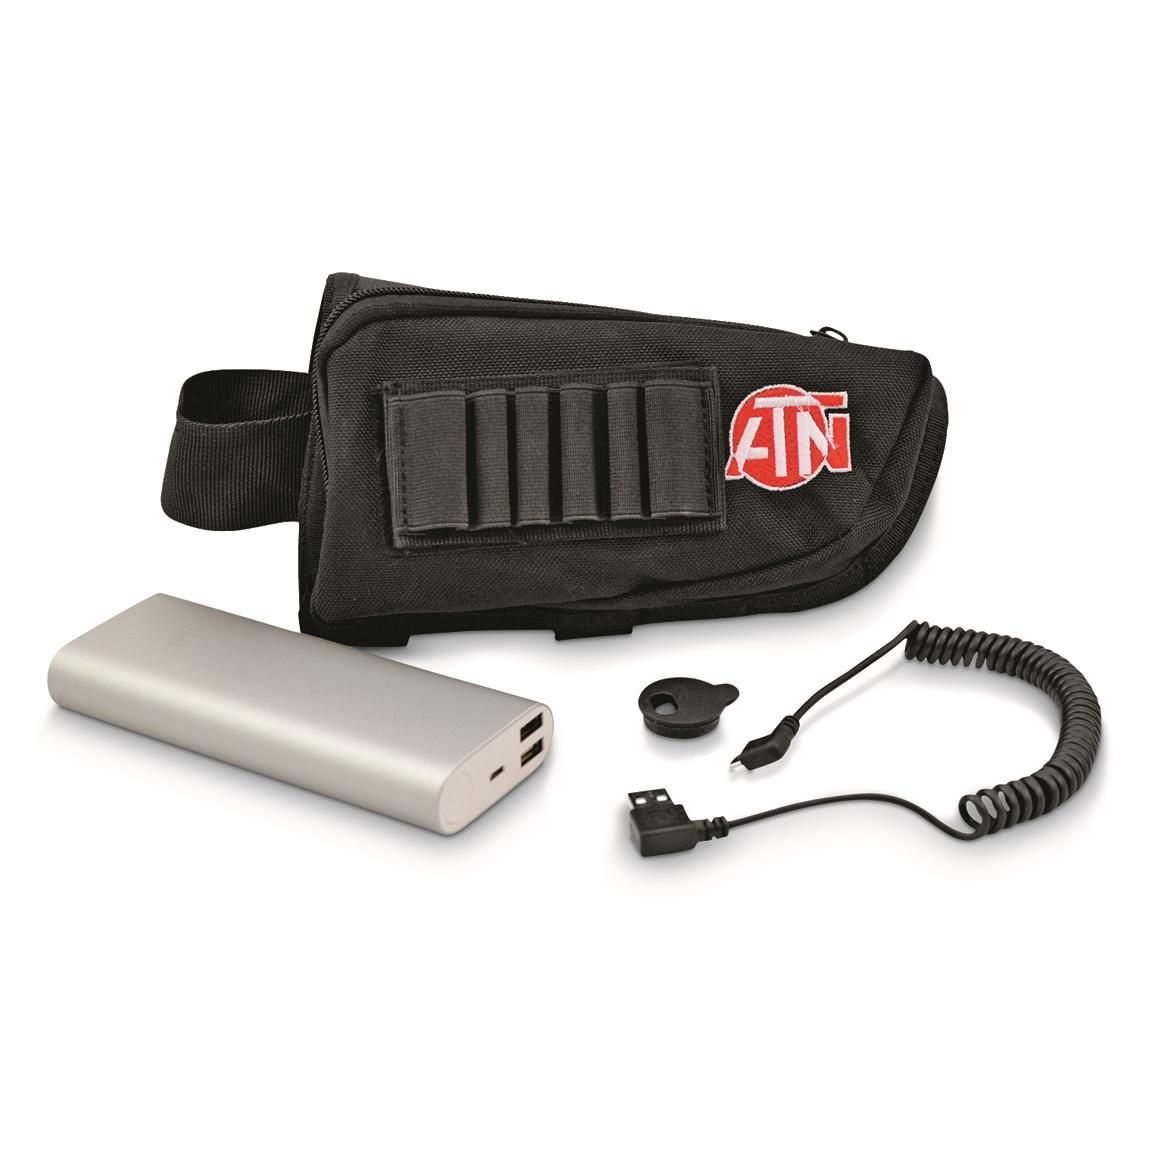 ATN Extended Life Battery Kit